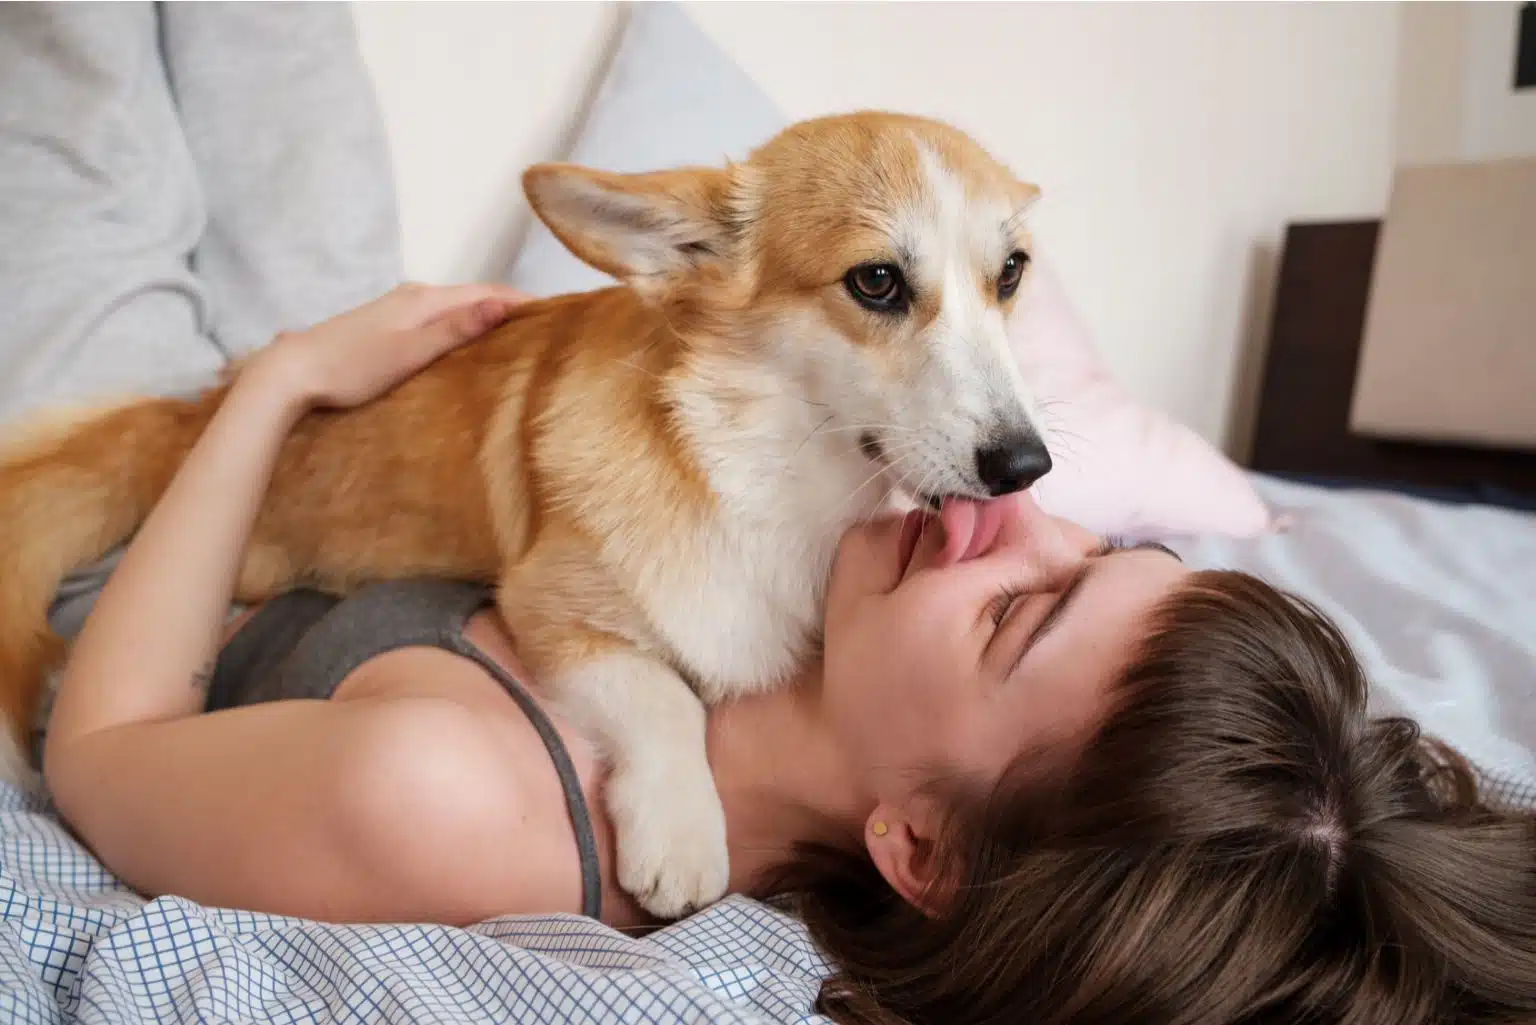 Beijar Pets: Especialistas Explicam Se Lambeijos Podem Prejudicar A Saúde